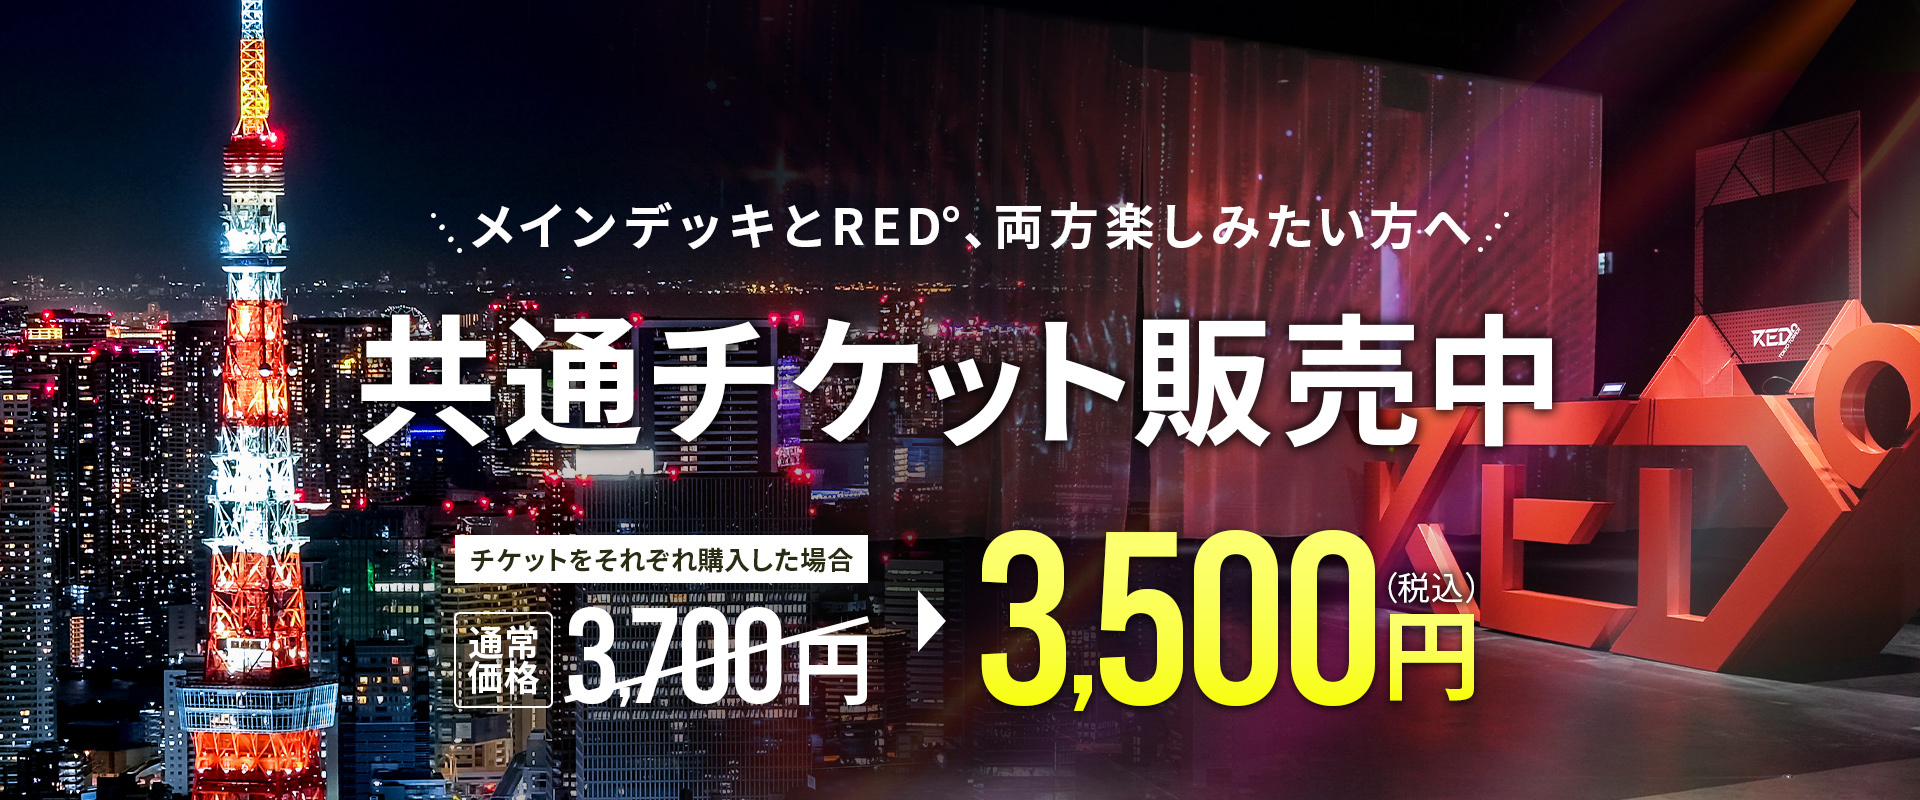 東京タワー×RED° TOKYO TOWER共通チケット販売開始